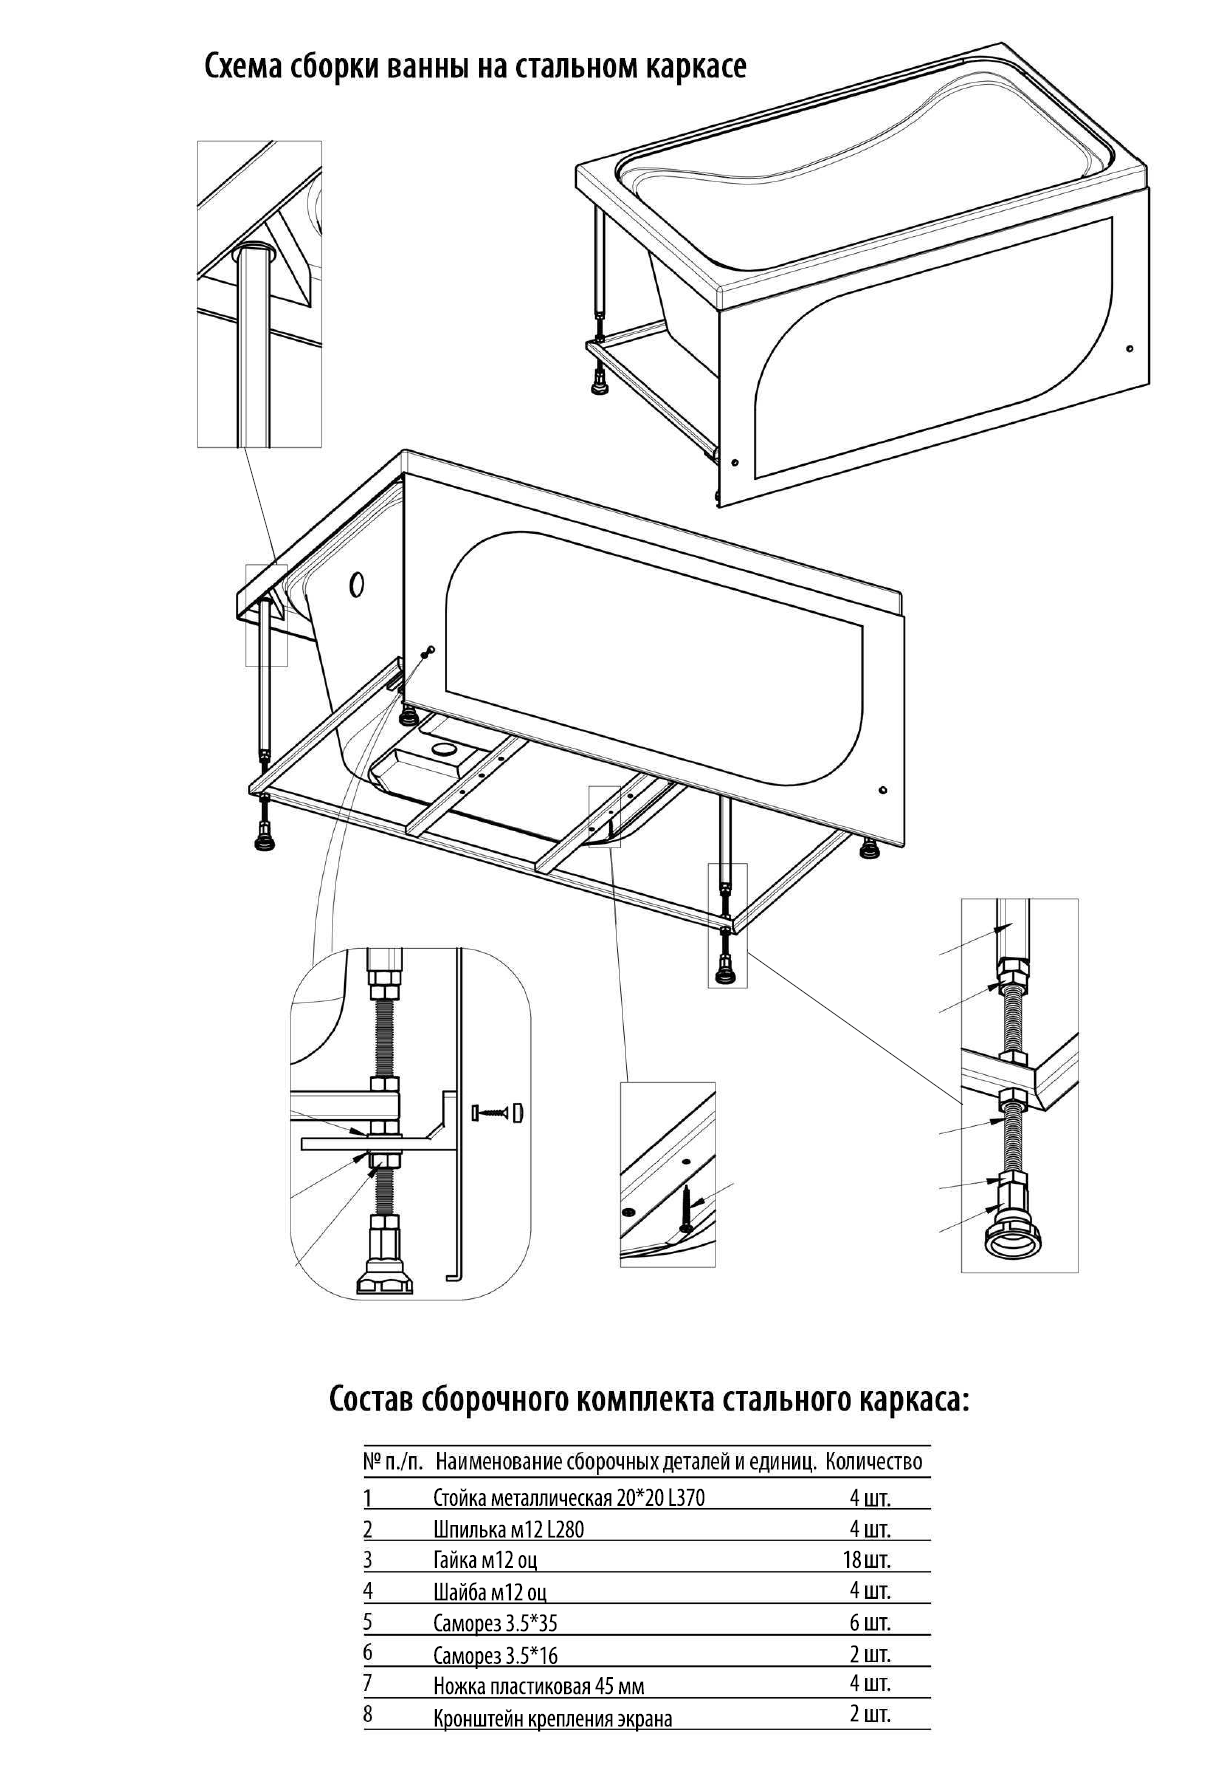 Инструкция по сборке стального сварного каркаса Стандарт/Ультра/Джена